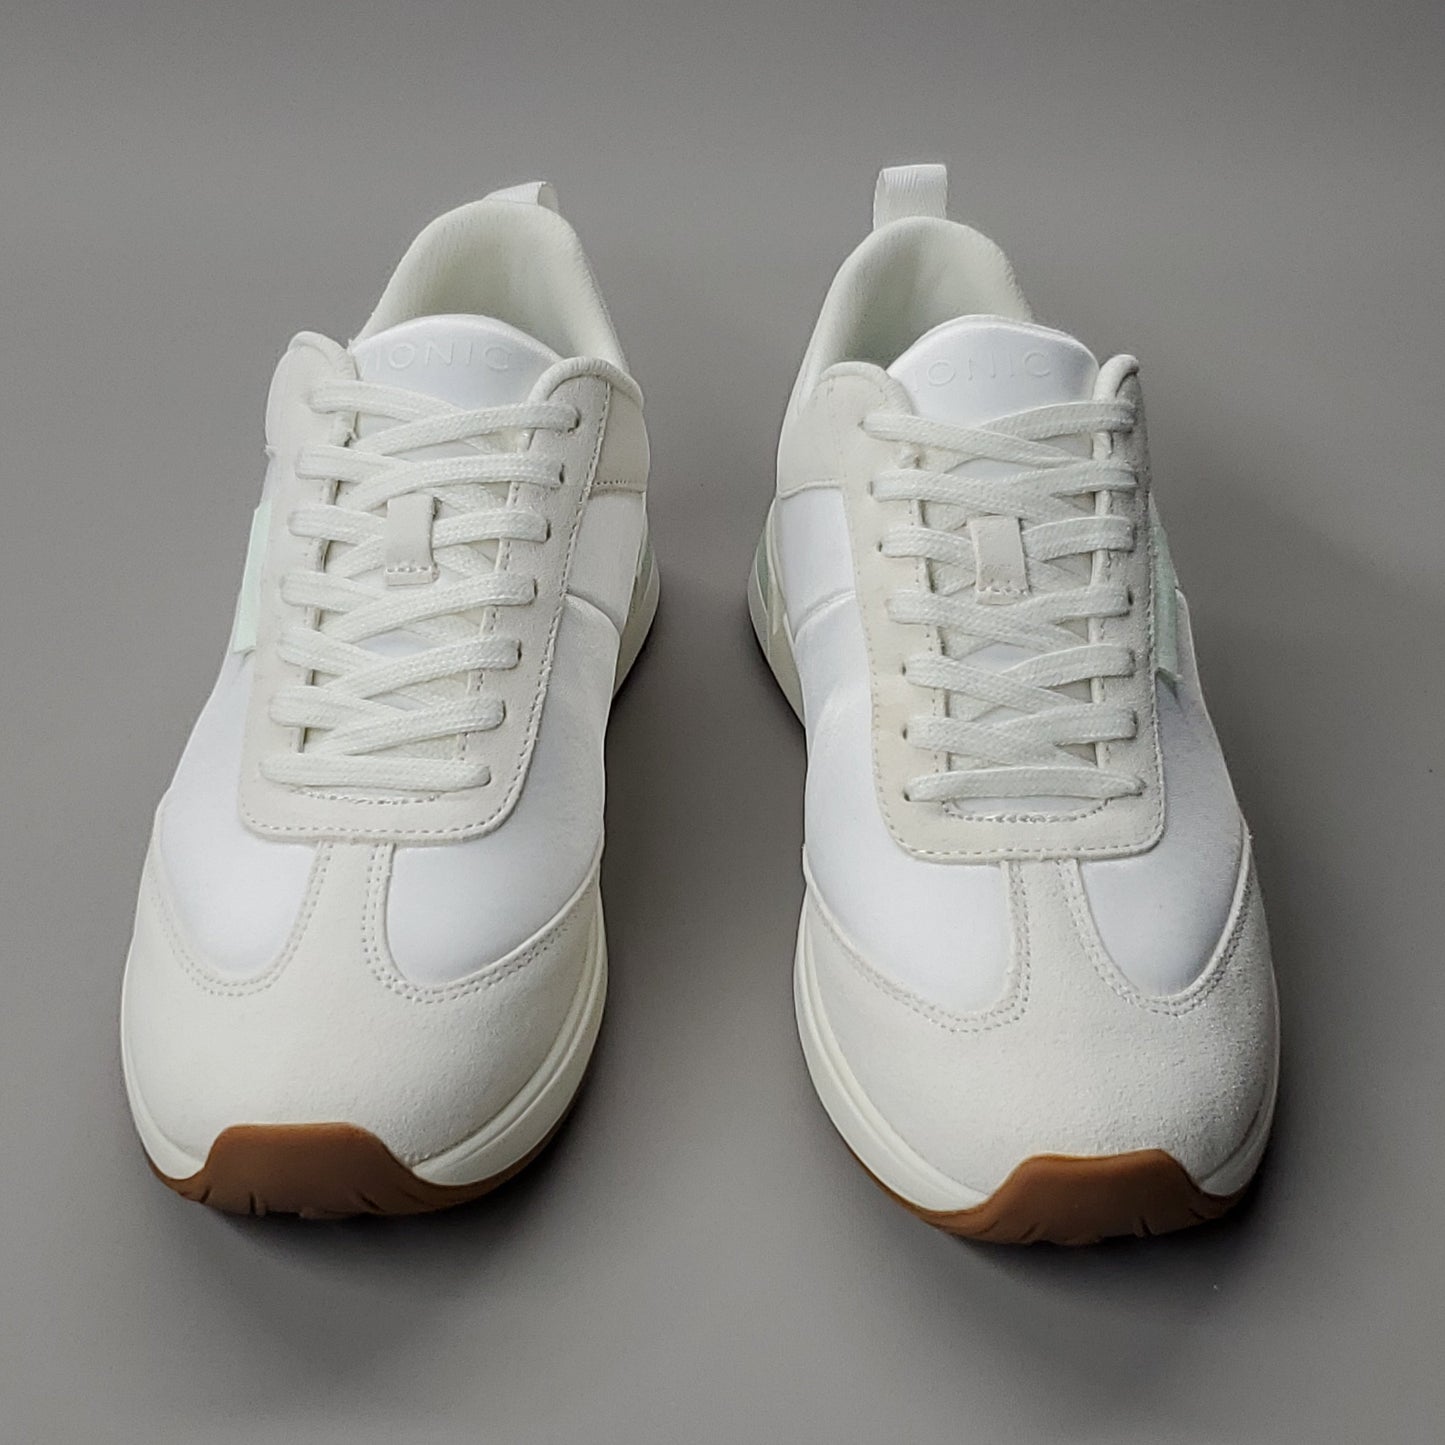 VIONIC Breilyn Satin Sneaker Shoe Women's Sz 7 M Beige/White (New)